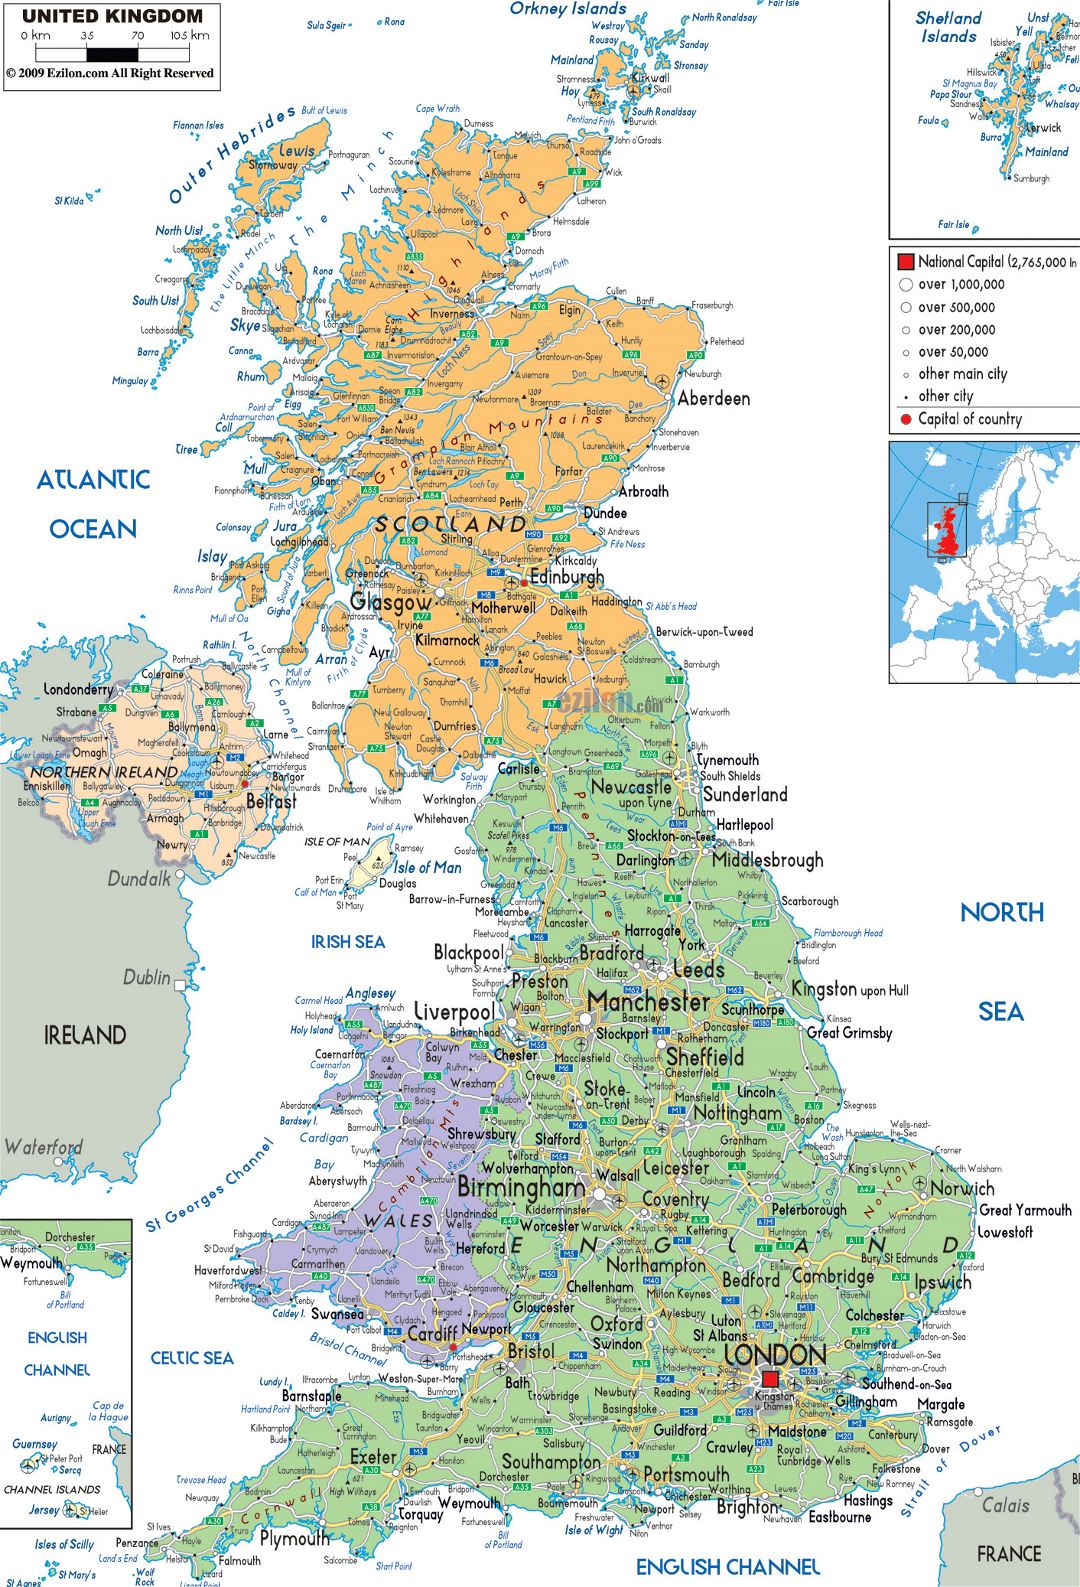 Большая политическая и административная карта Соединенного Королевства с дорогами, городами и аэропортами